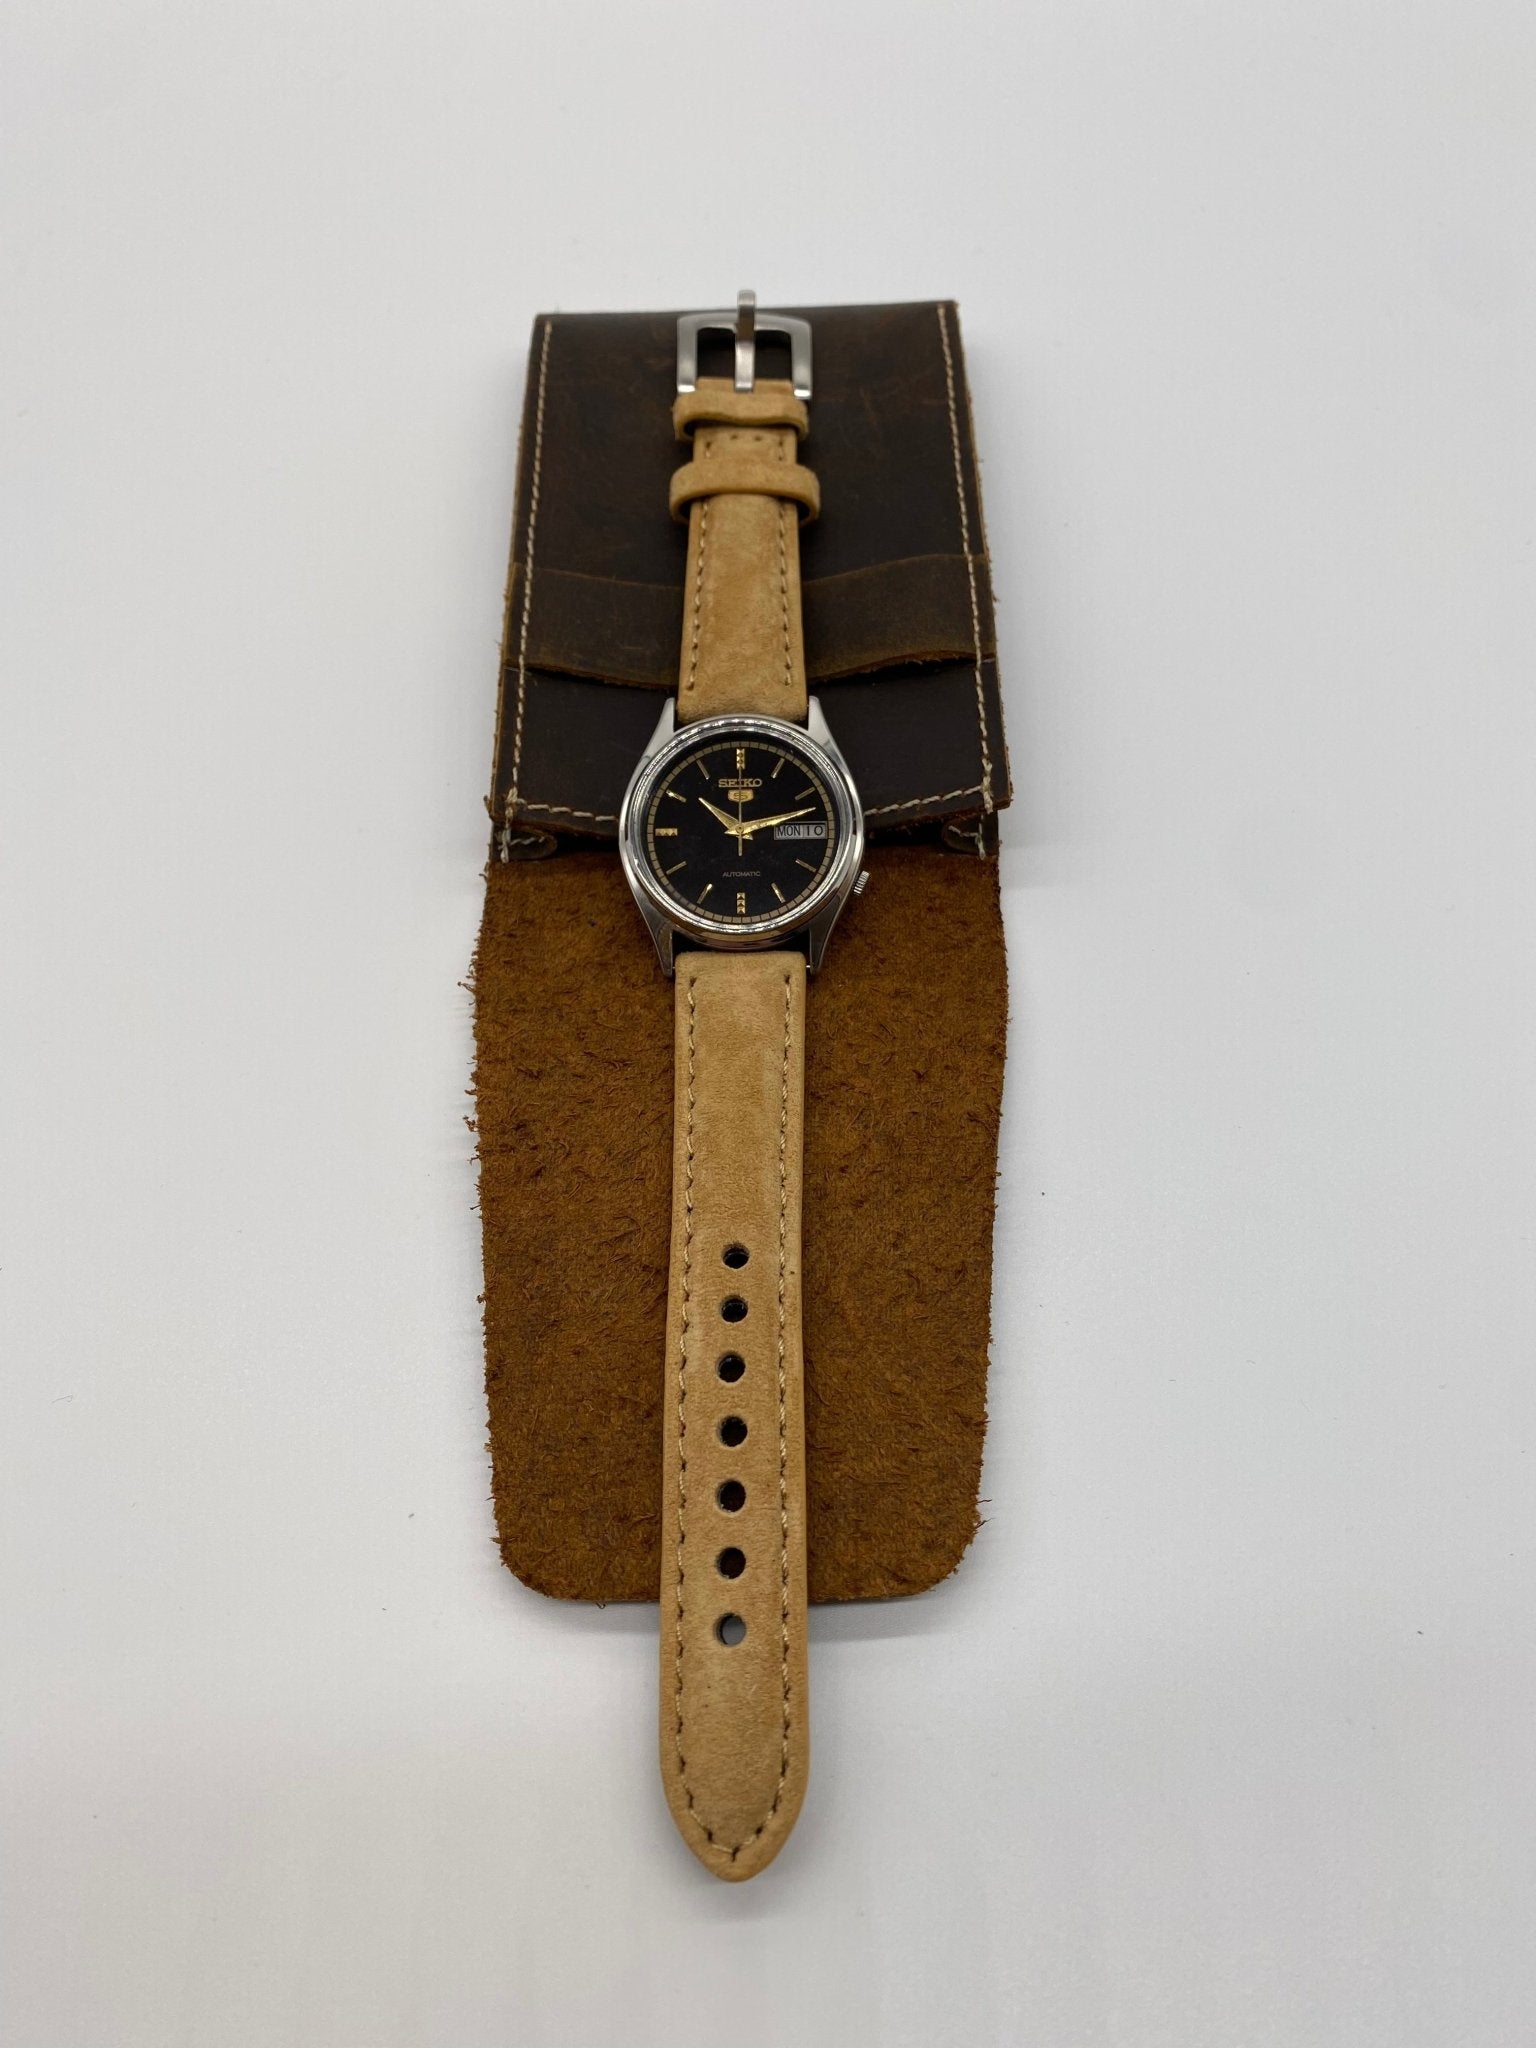 Montre vintage Seiko 7009-8920 - Montre a papy montres vintage